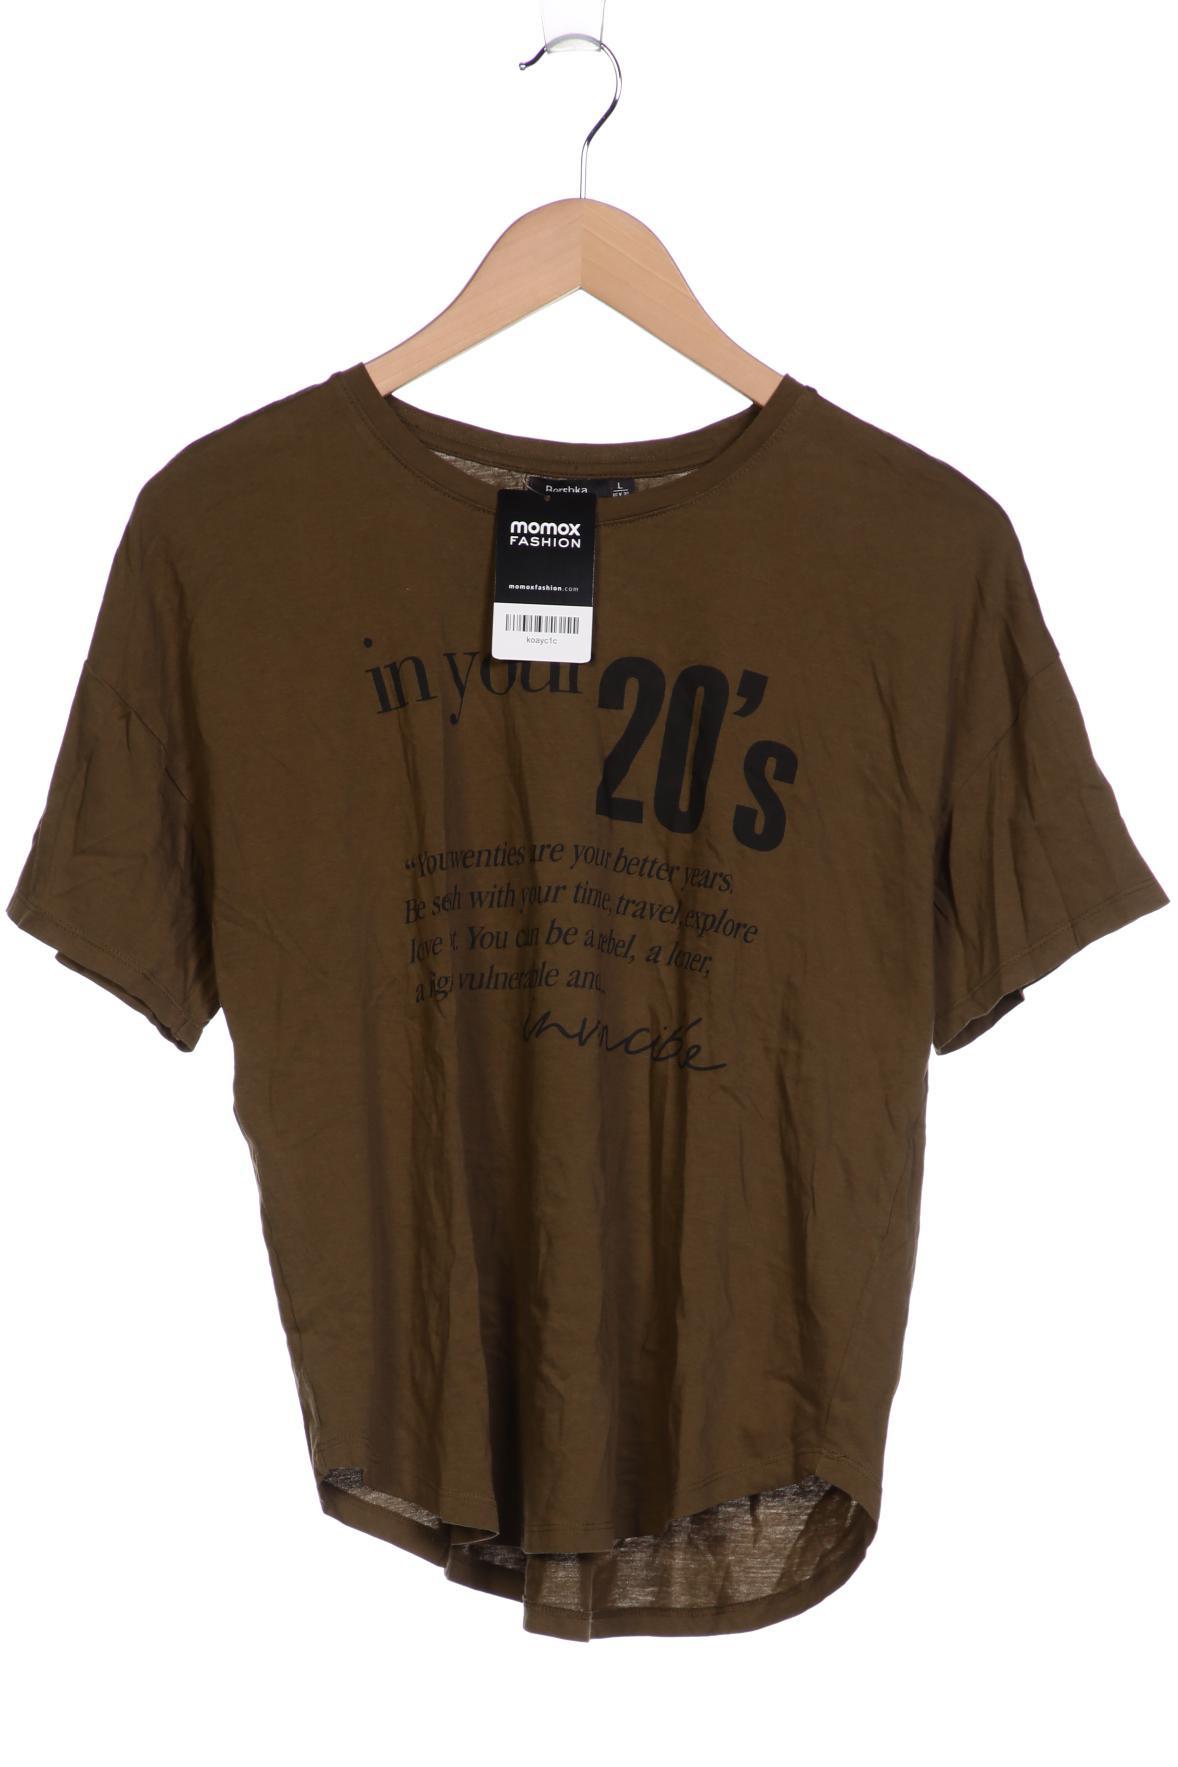 bershka Damen T-Shirt, braun, Gr. 42 von Bershka